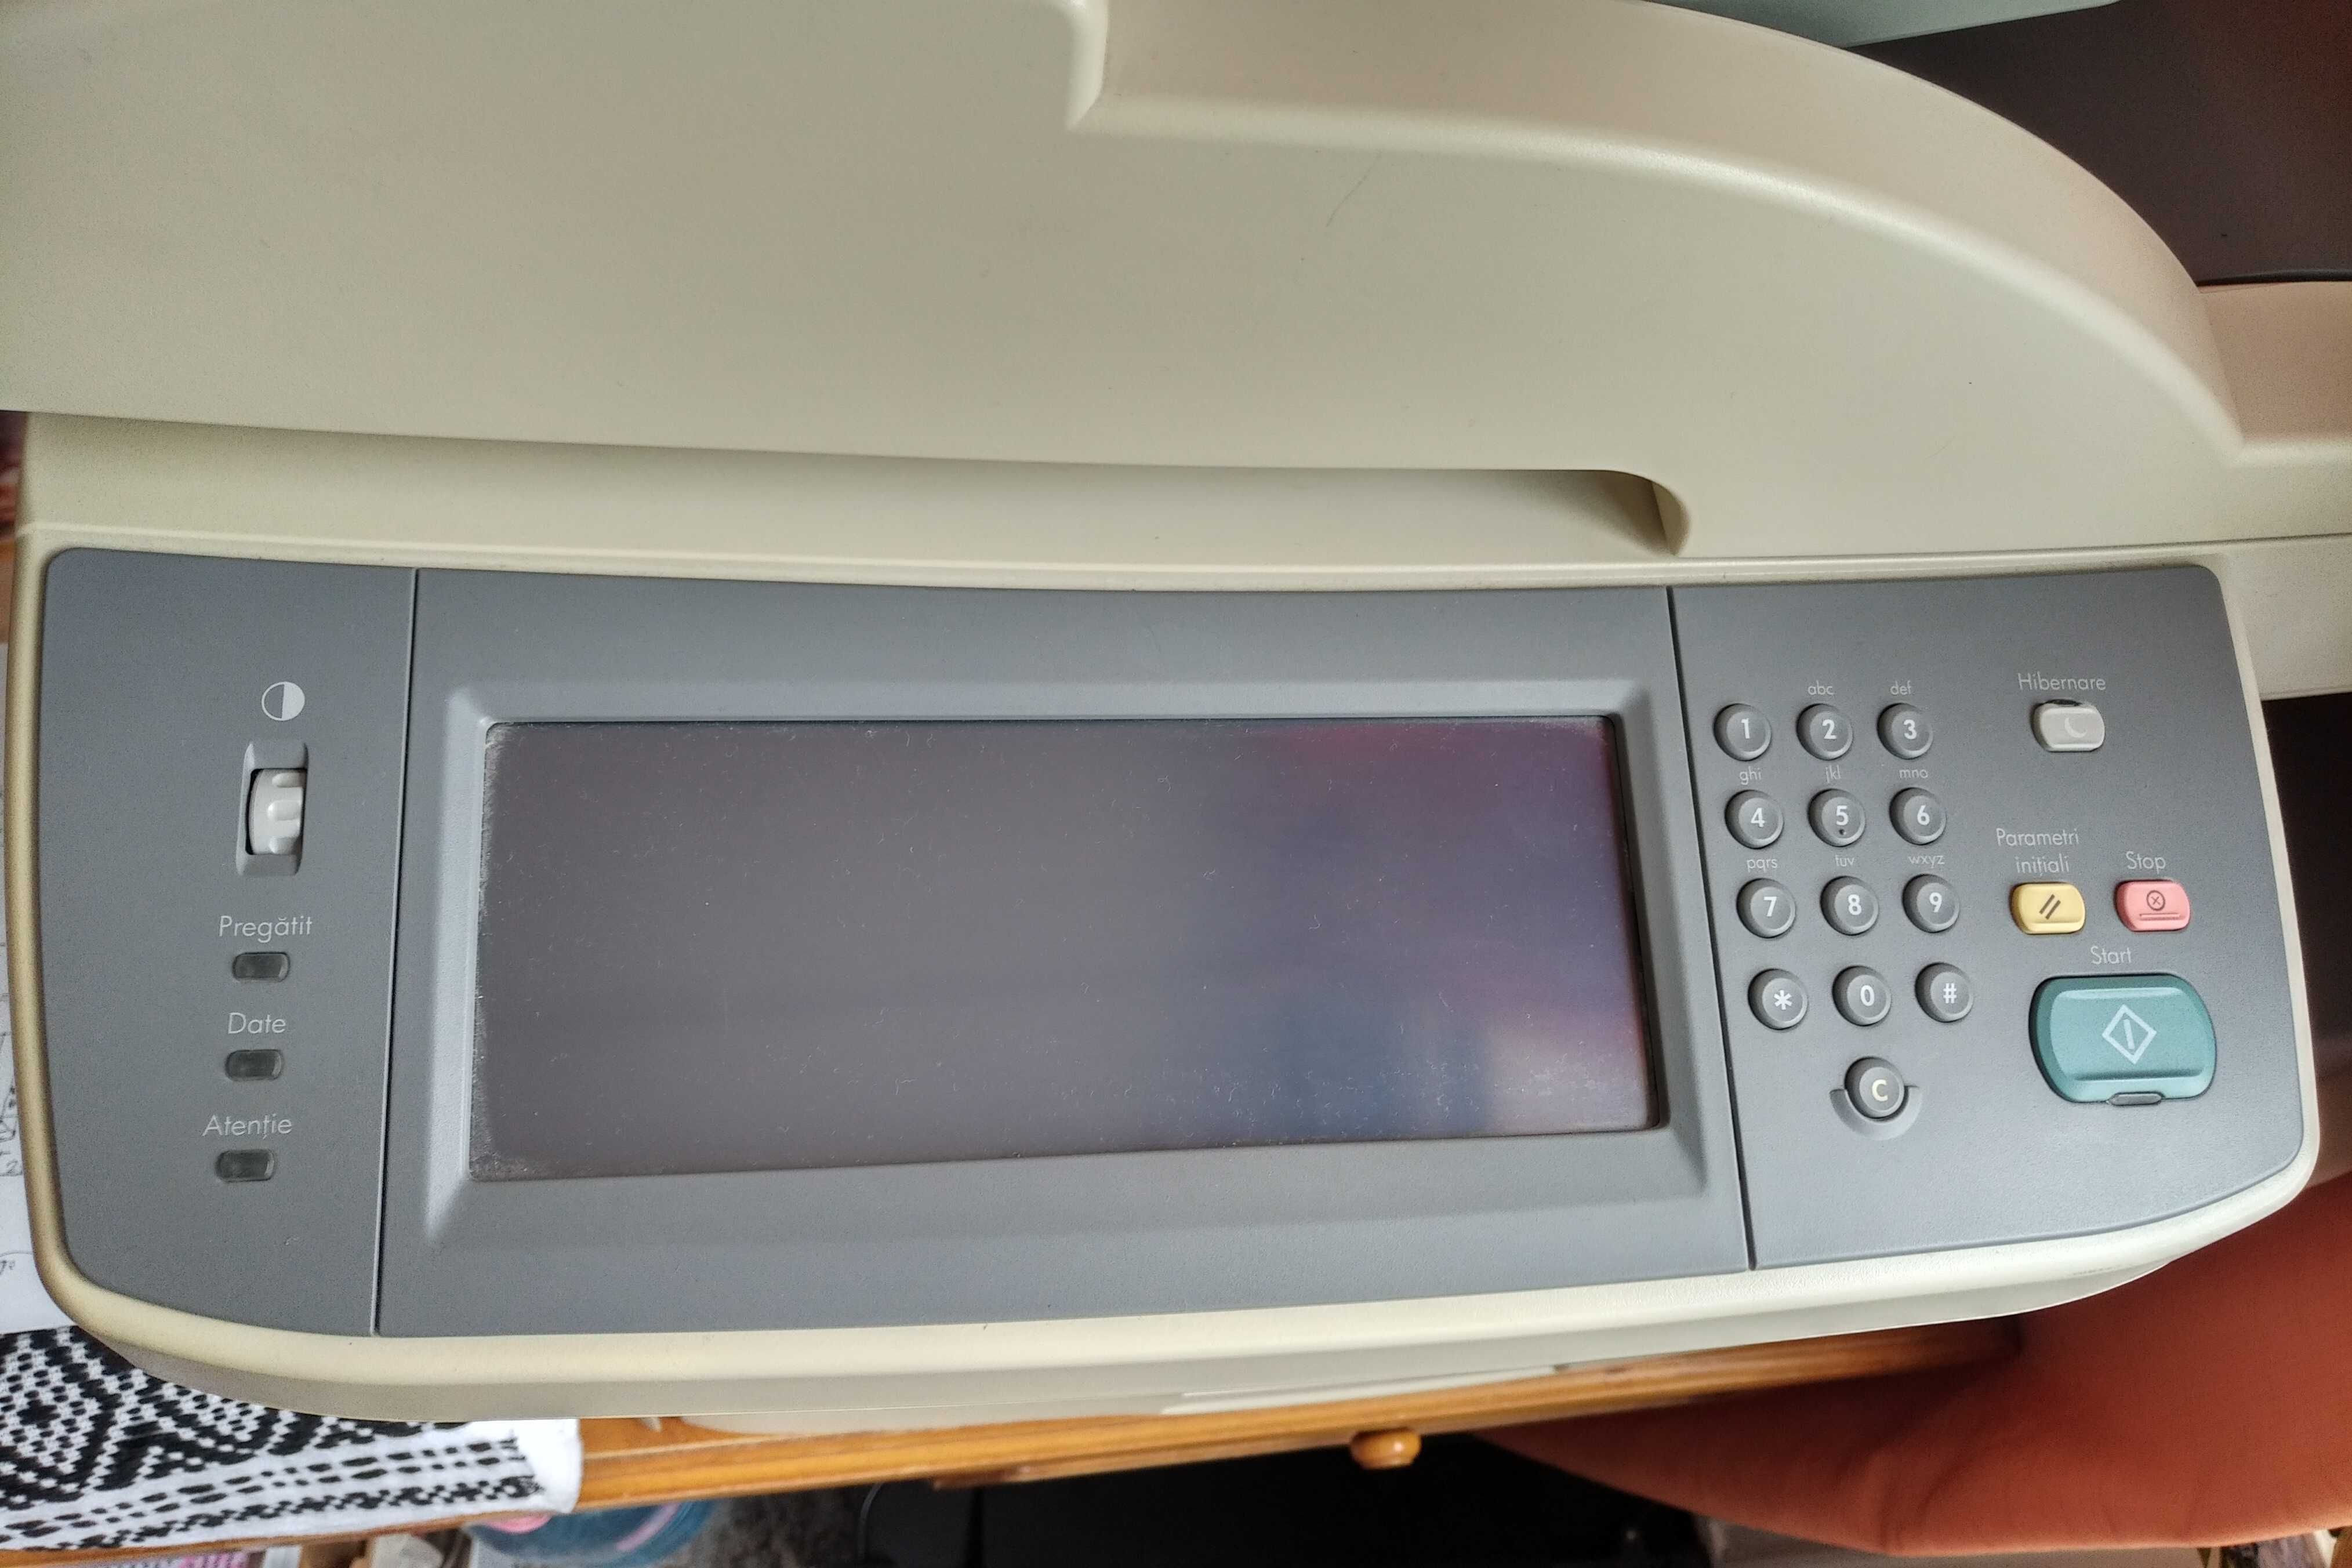 Imprimanta HP LaserJet M5025 MFP